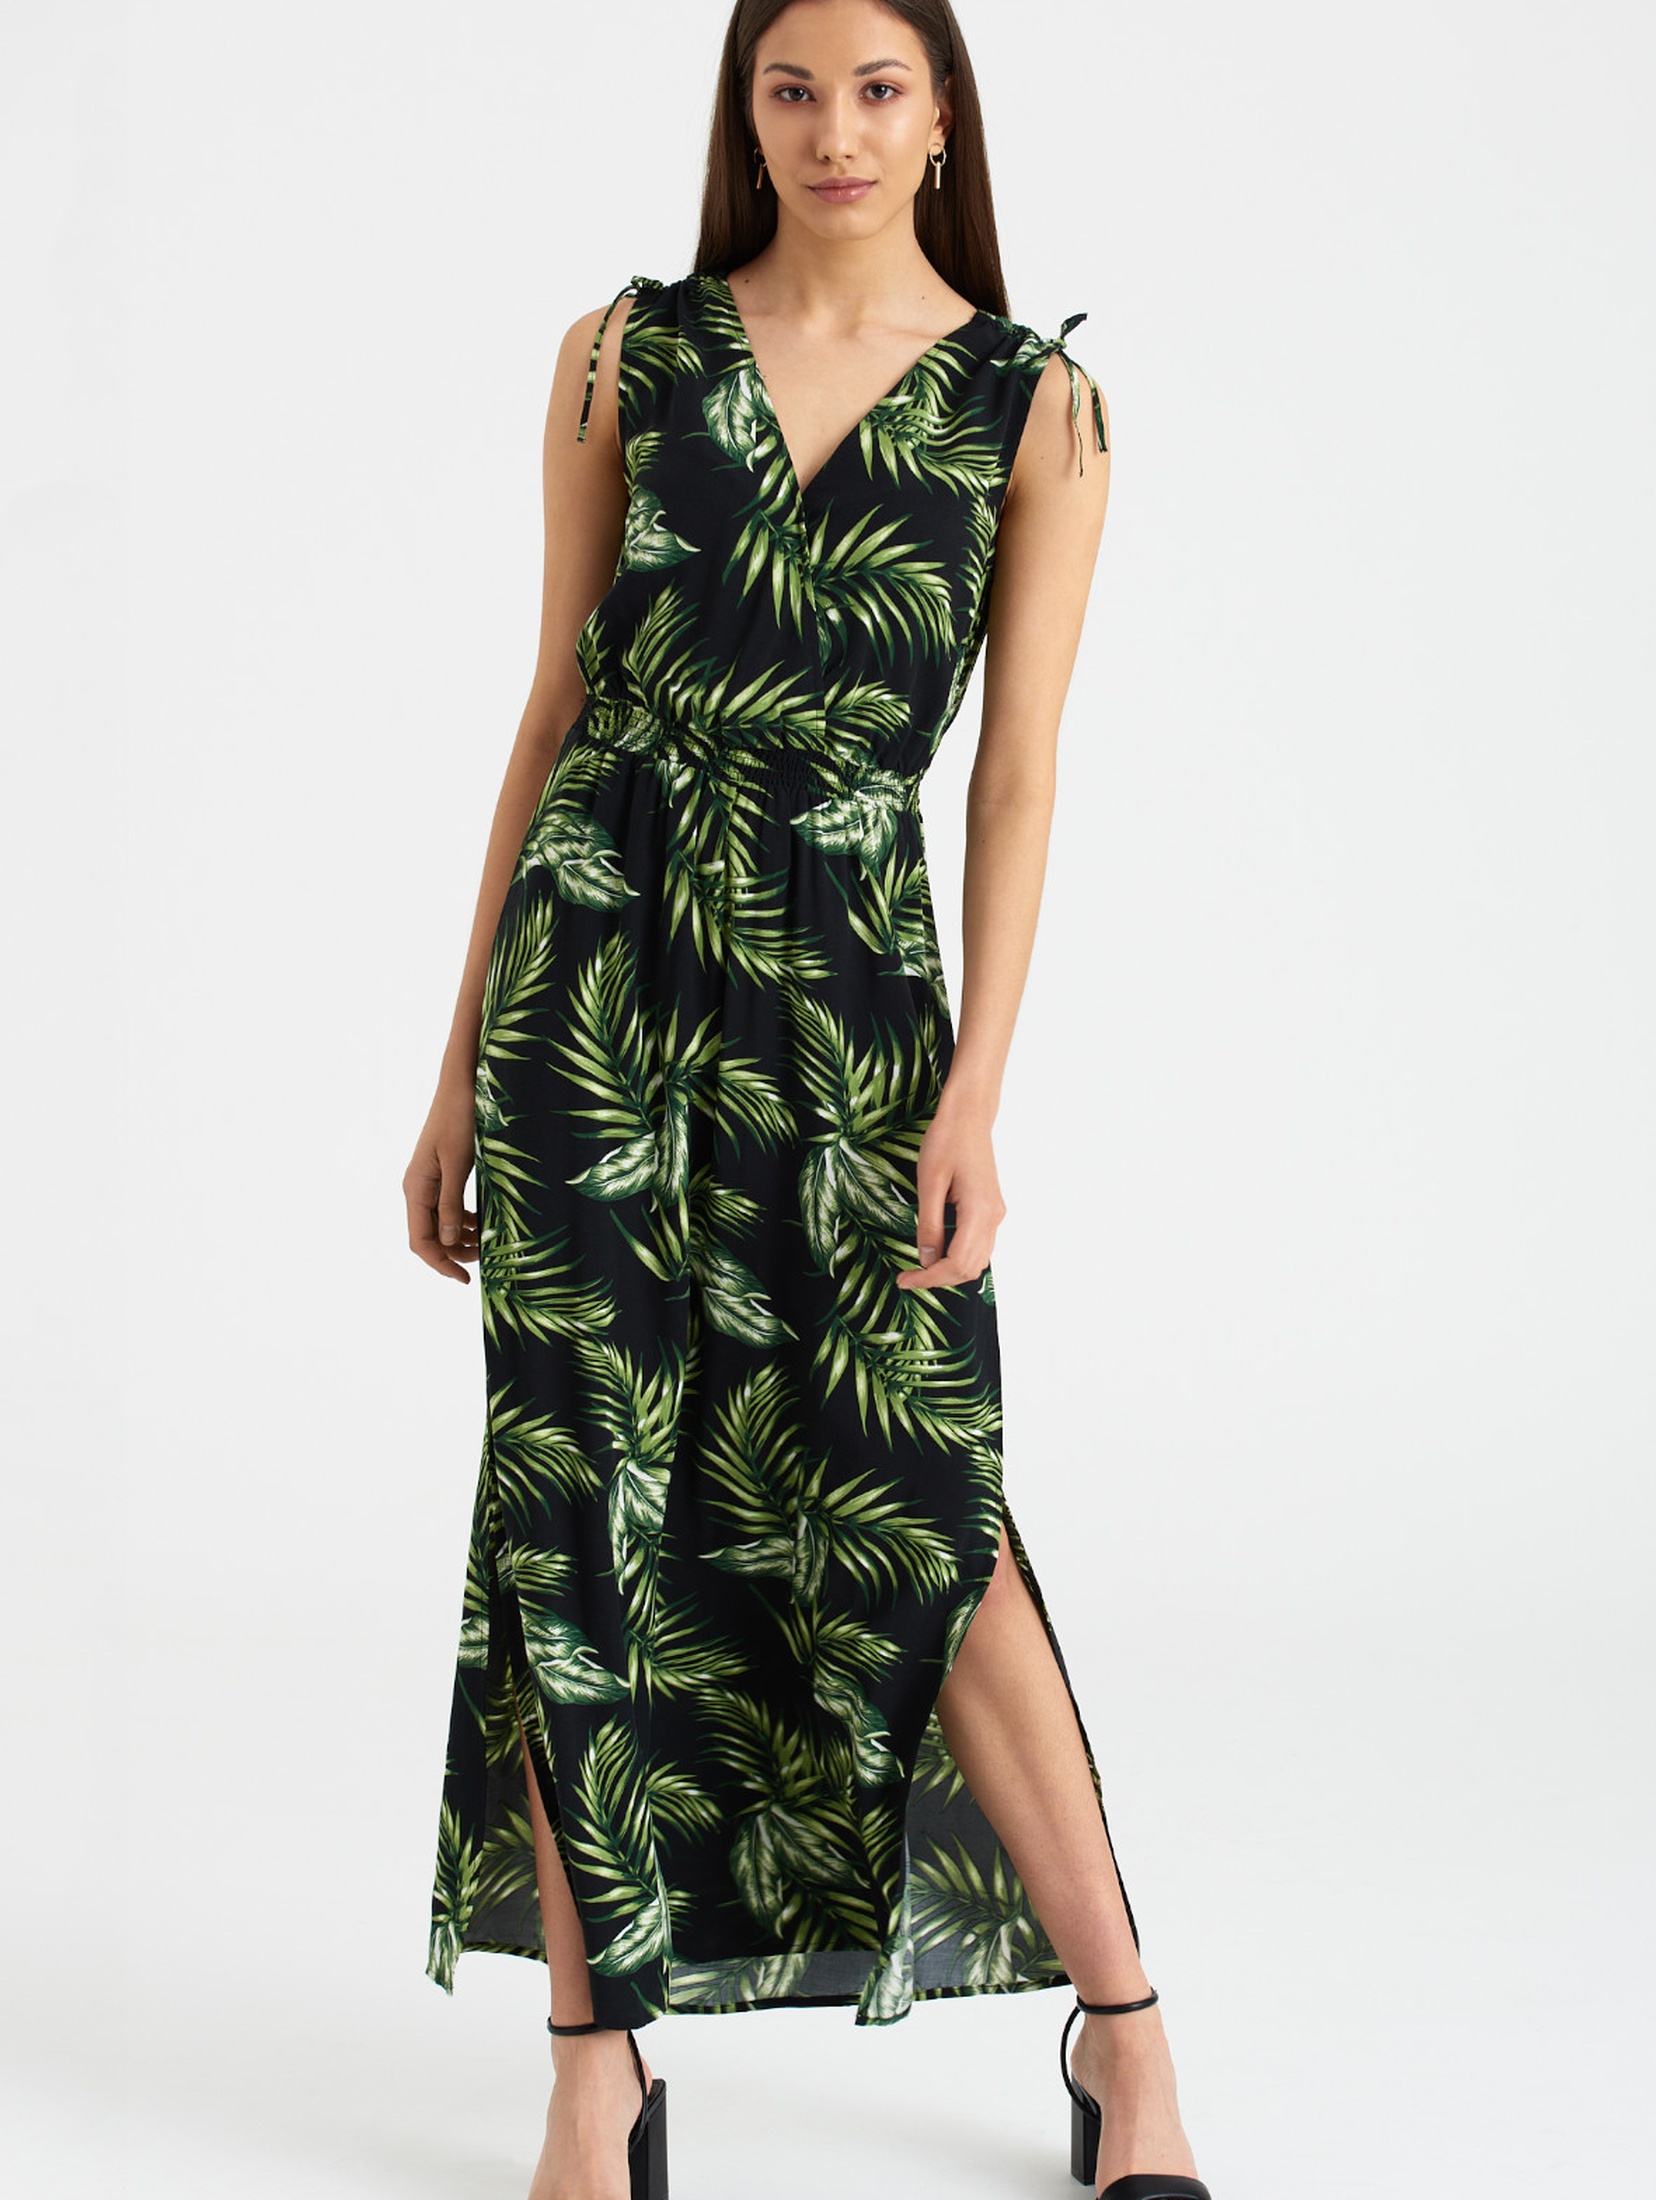 Długa sukienka damska z motywem roślinnym